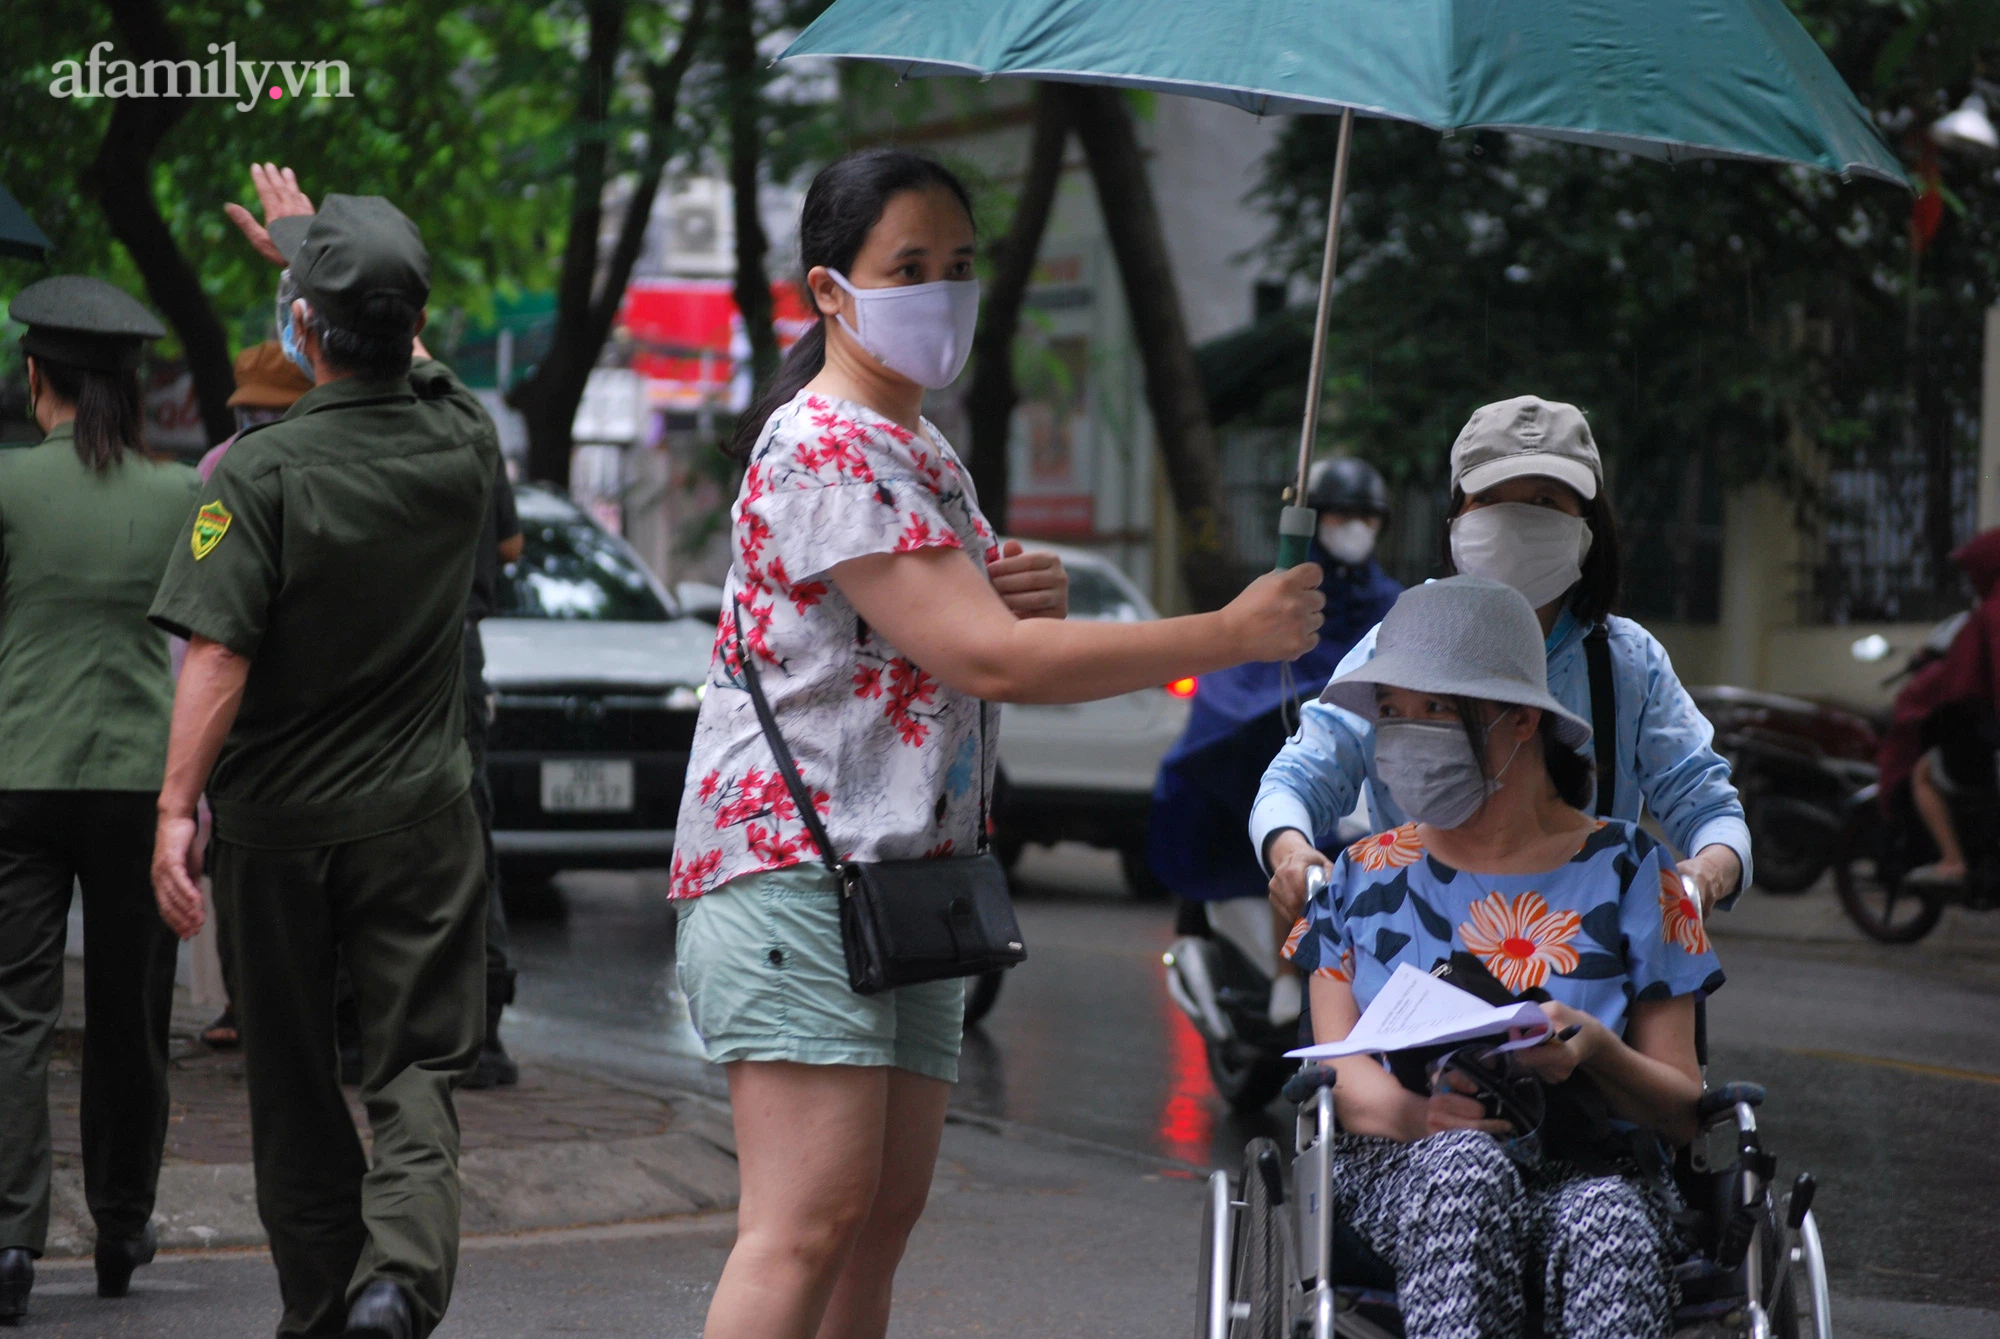 Hà Nội: Phường Nhân Chính ghi nhận cặp vợ chồng mắc COVID-19, người dân đội mưa đi tiêm phòng - Ảnh 8.